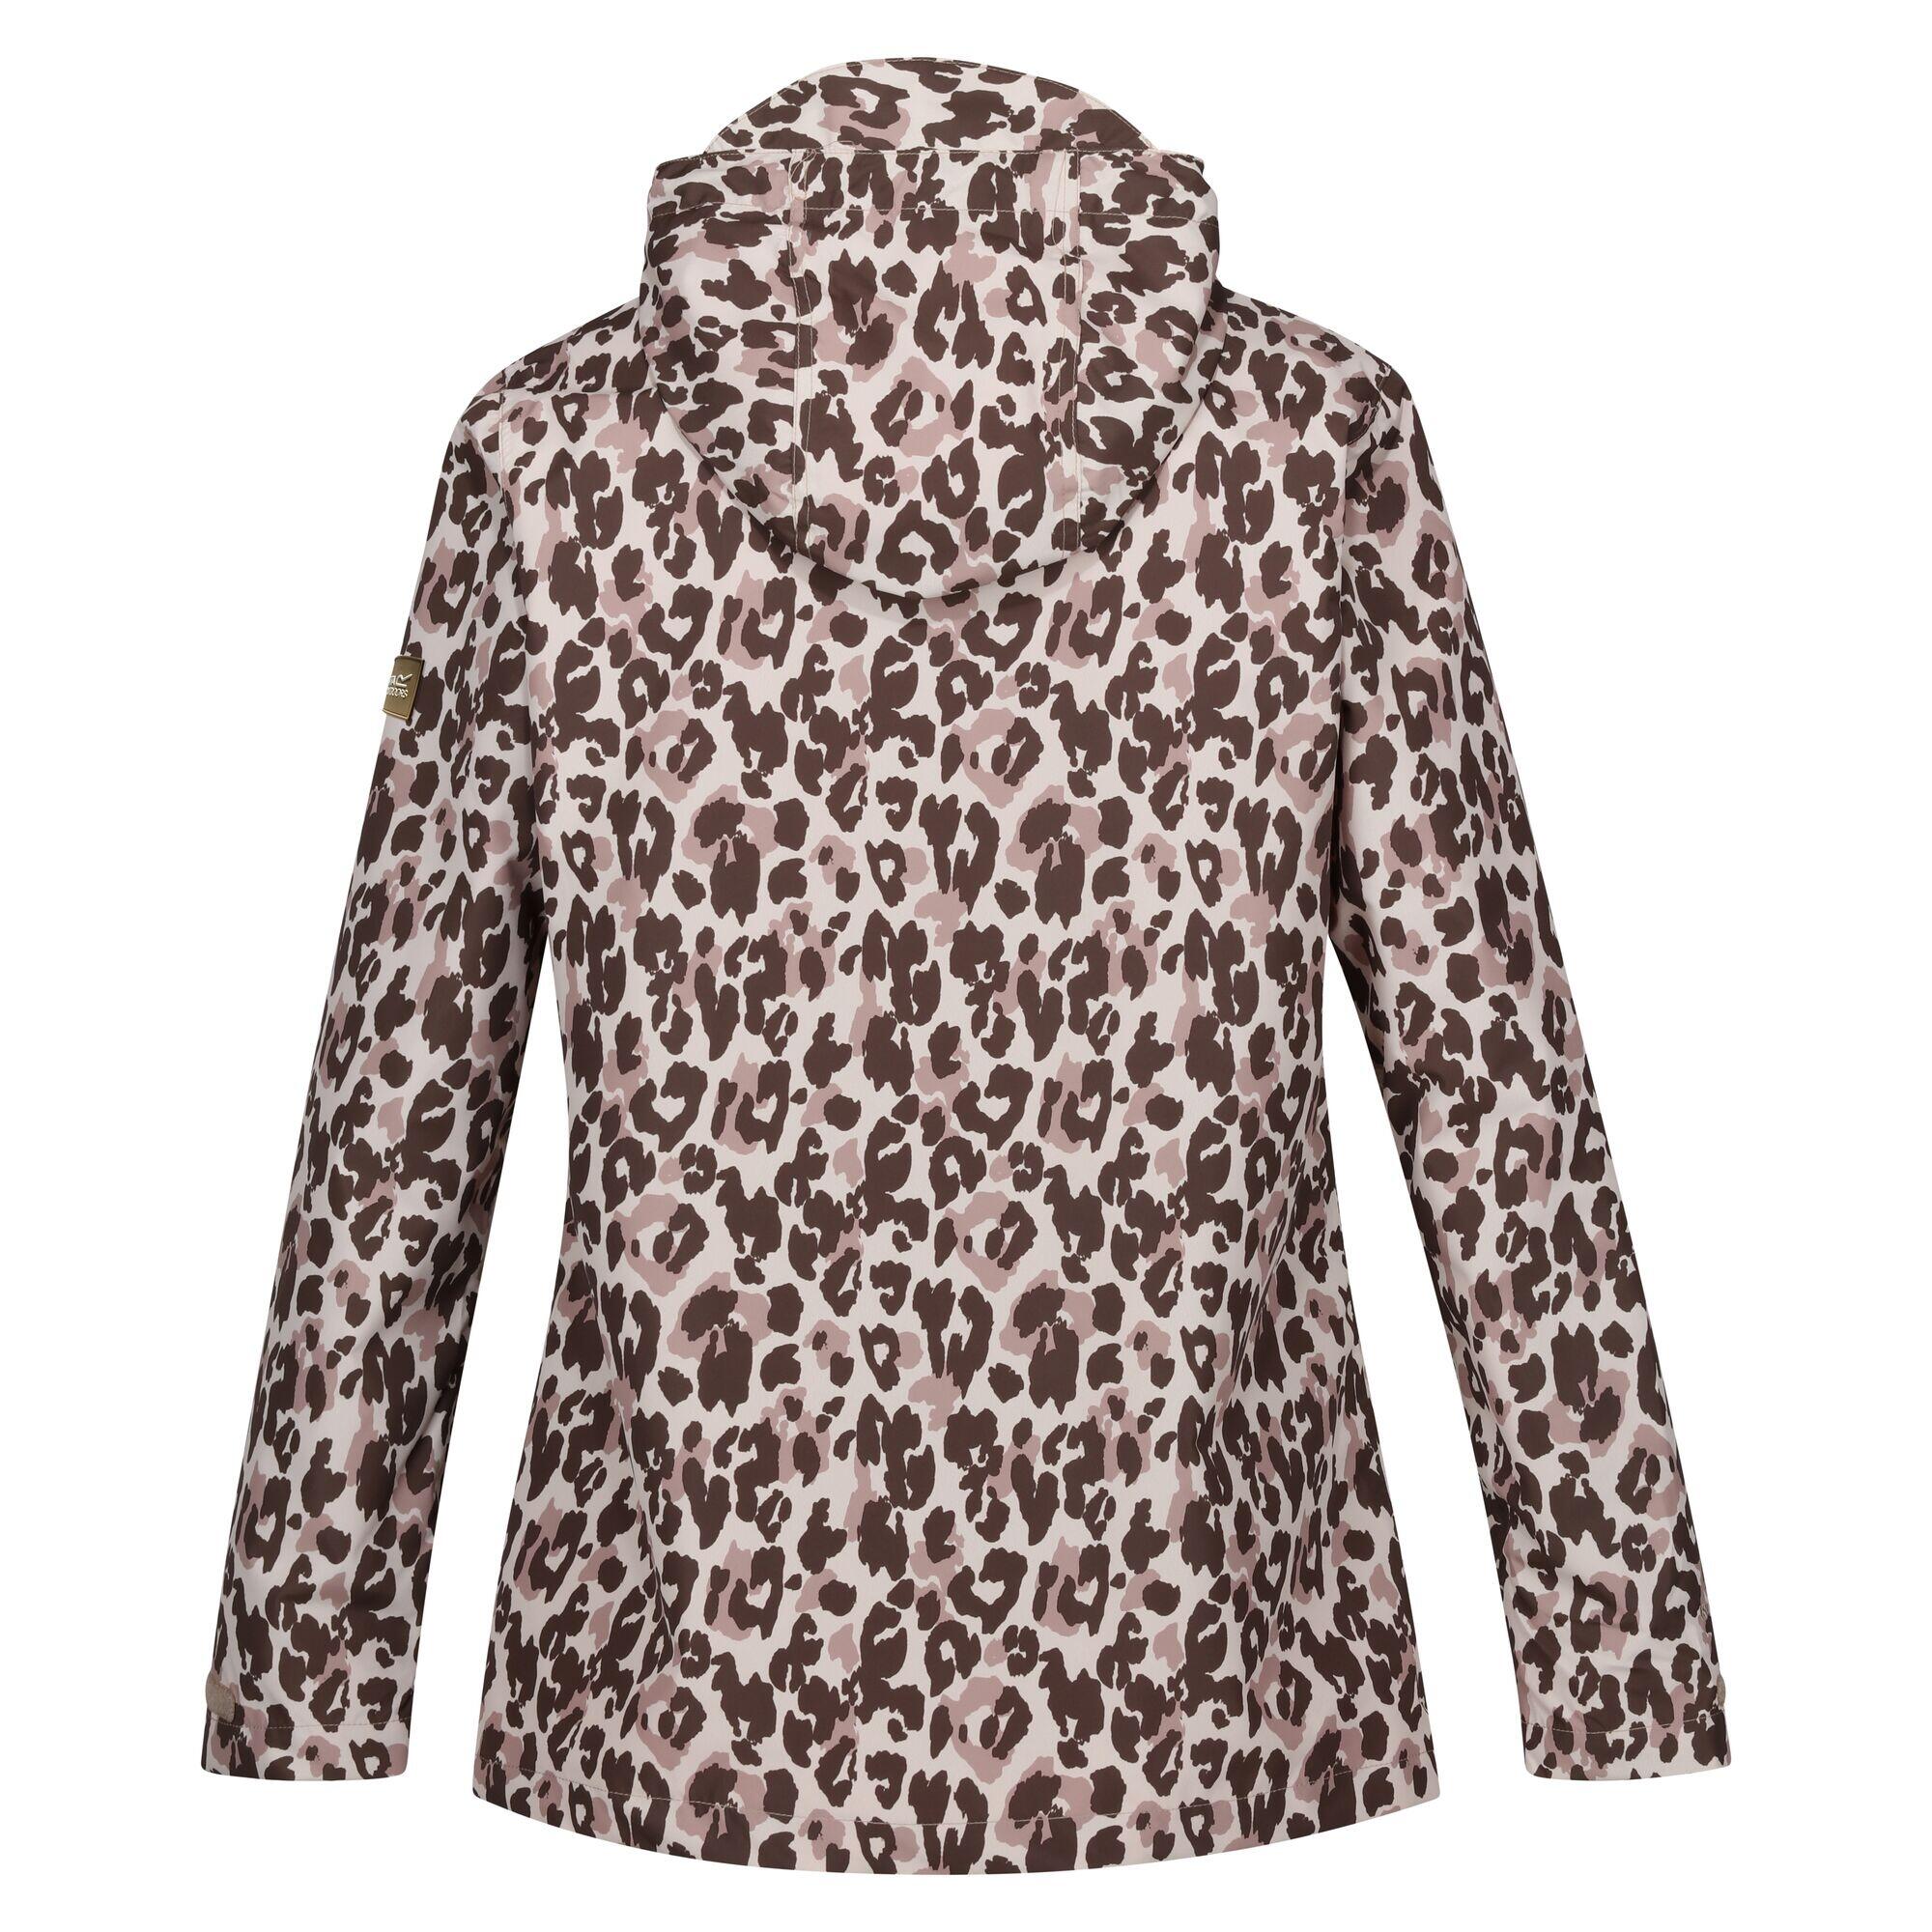 Womens/Ladies Bayletta Leopard Print Waterproof Jacket (Brown) 2/5